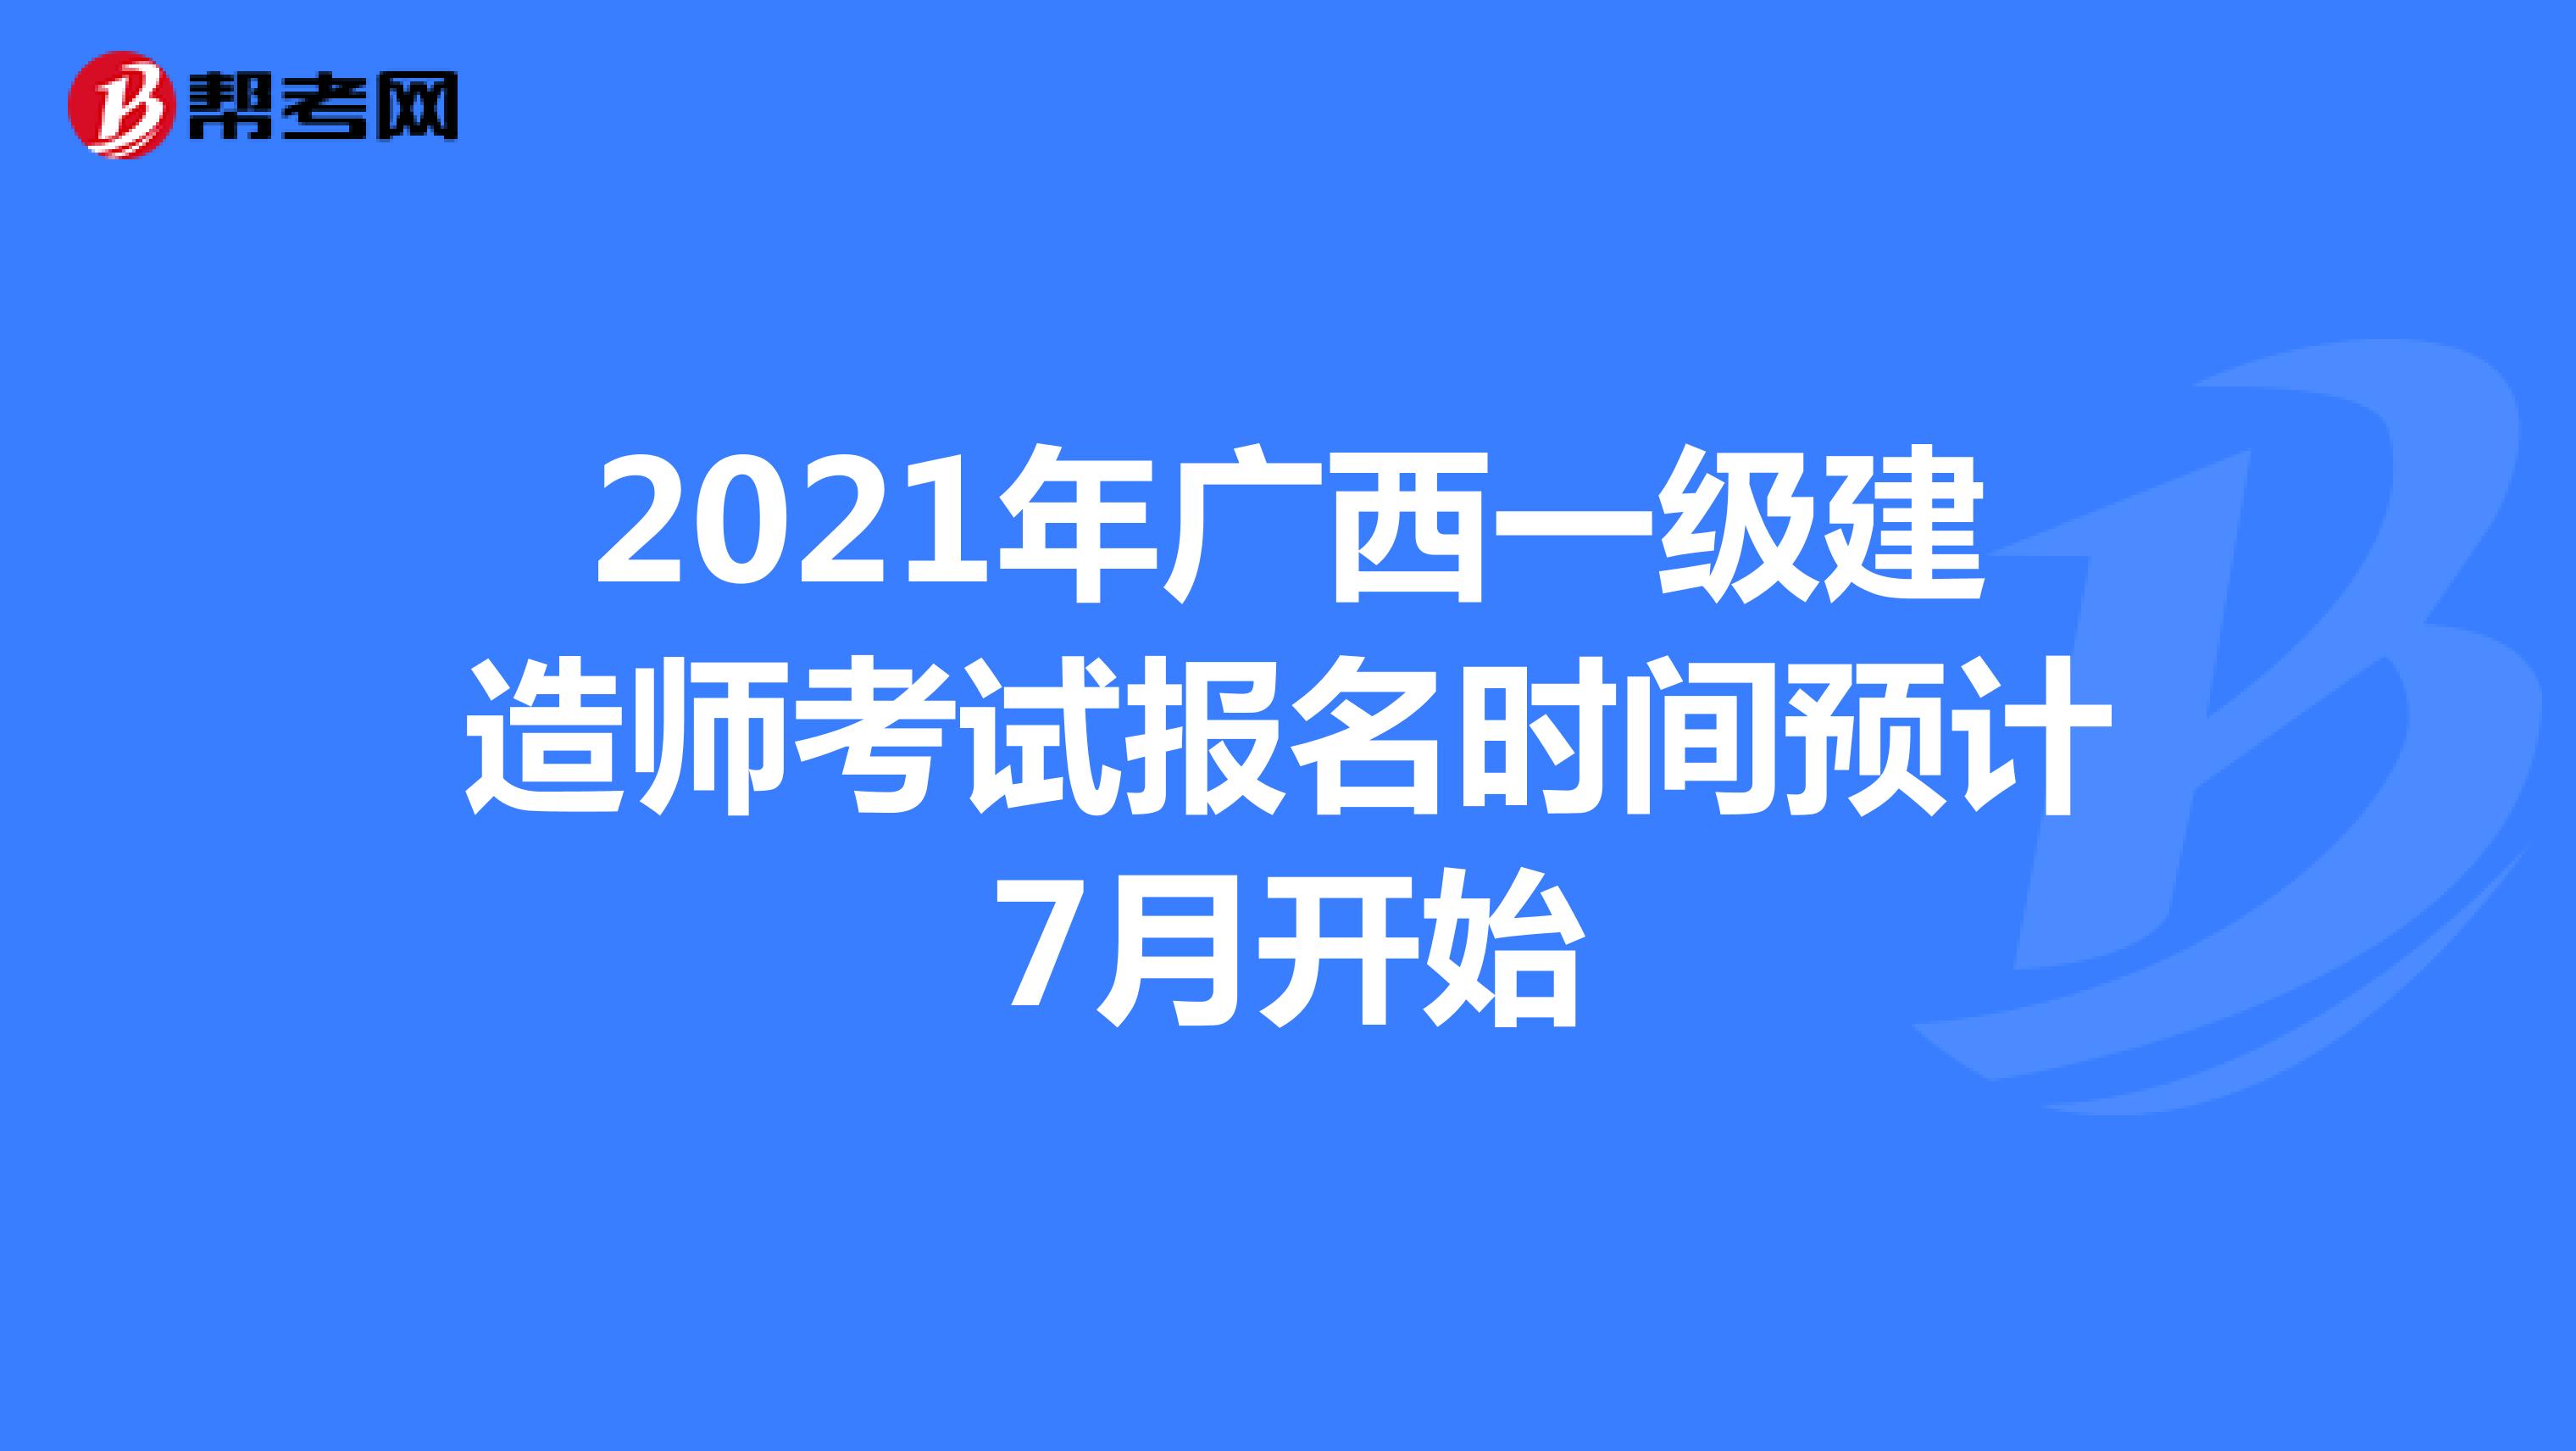 2021年广西一级建造师考试报名时间预计7月开始